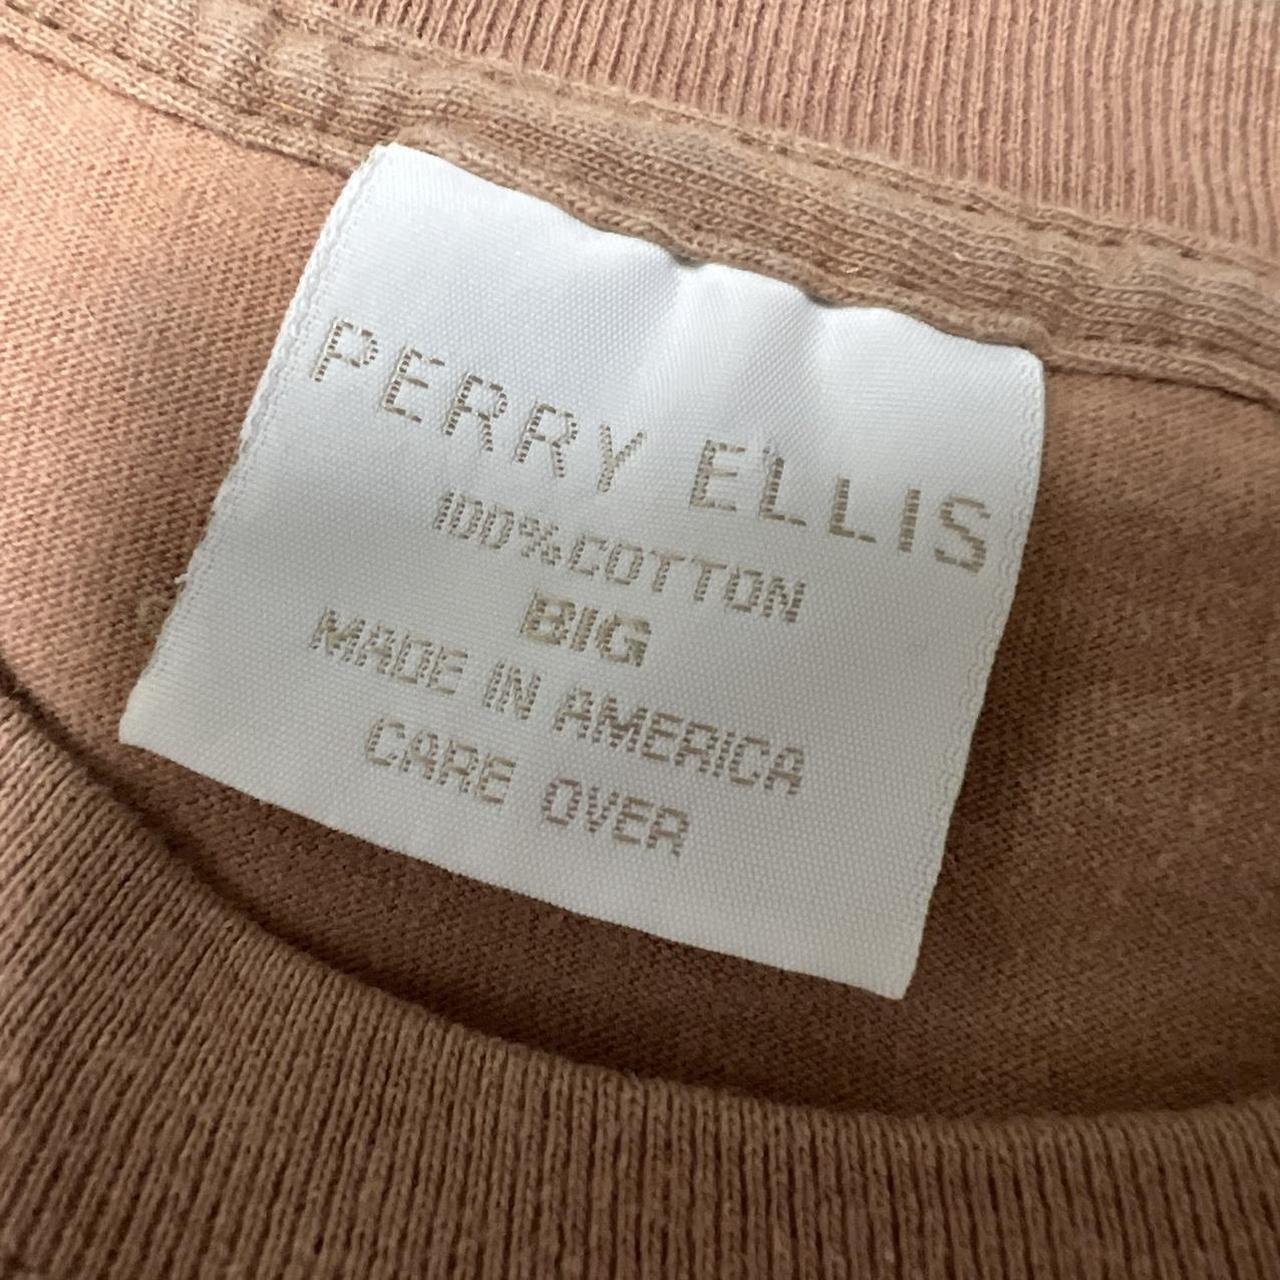 Perry Ellis Men's Tan and Brown T-shirt (2)